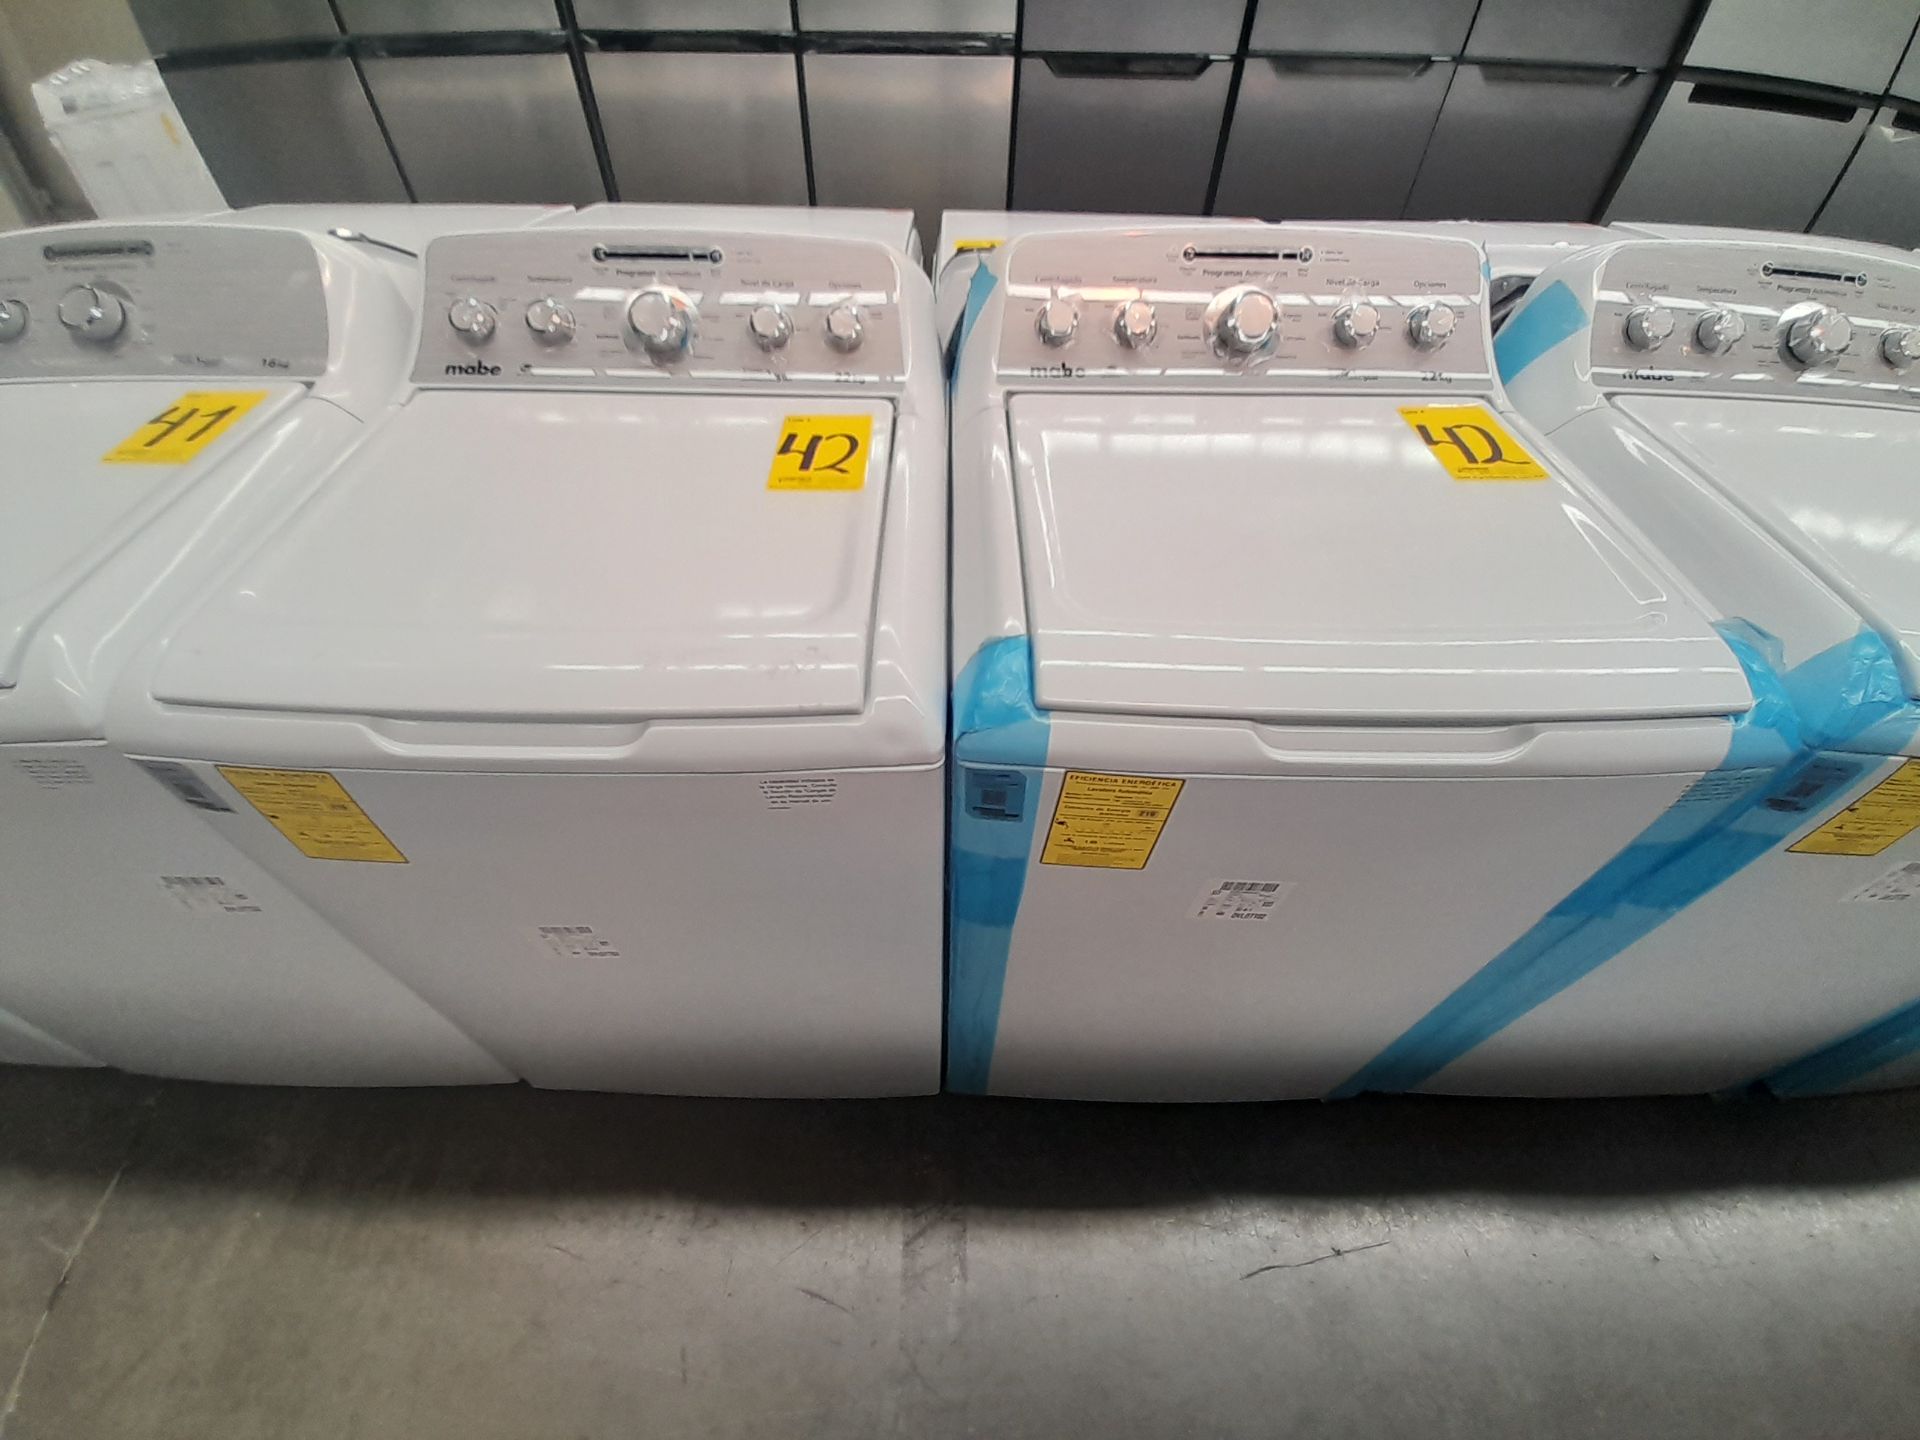 Lote de 2 lavadoras contiene: 1 lavadora de 22 KG, Marca MABE, Modelo LMA72215CBAB02, Serie S02700,